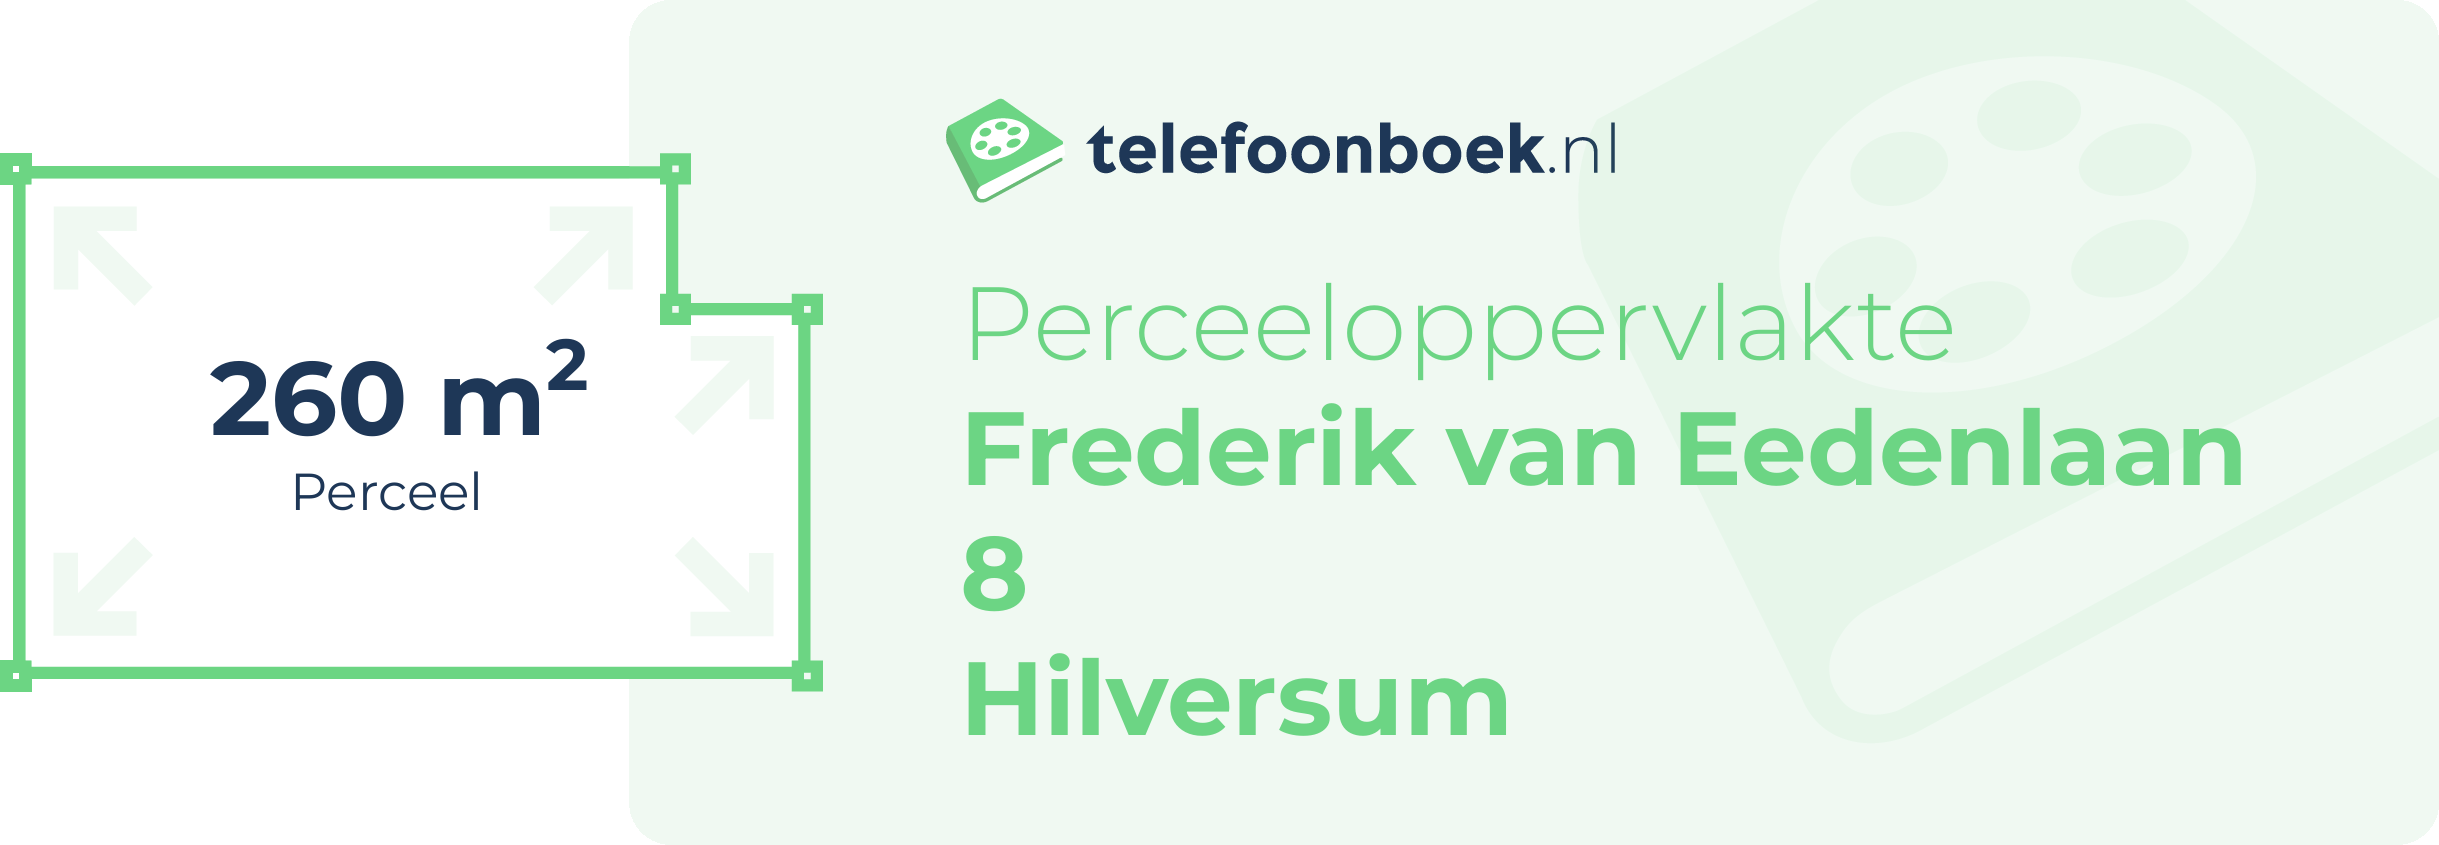 Perceeloppervlakte Frederik Van Eedenlaan 8 Hilversum